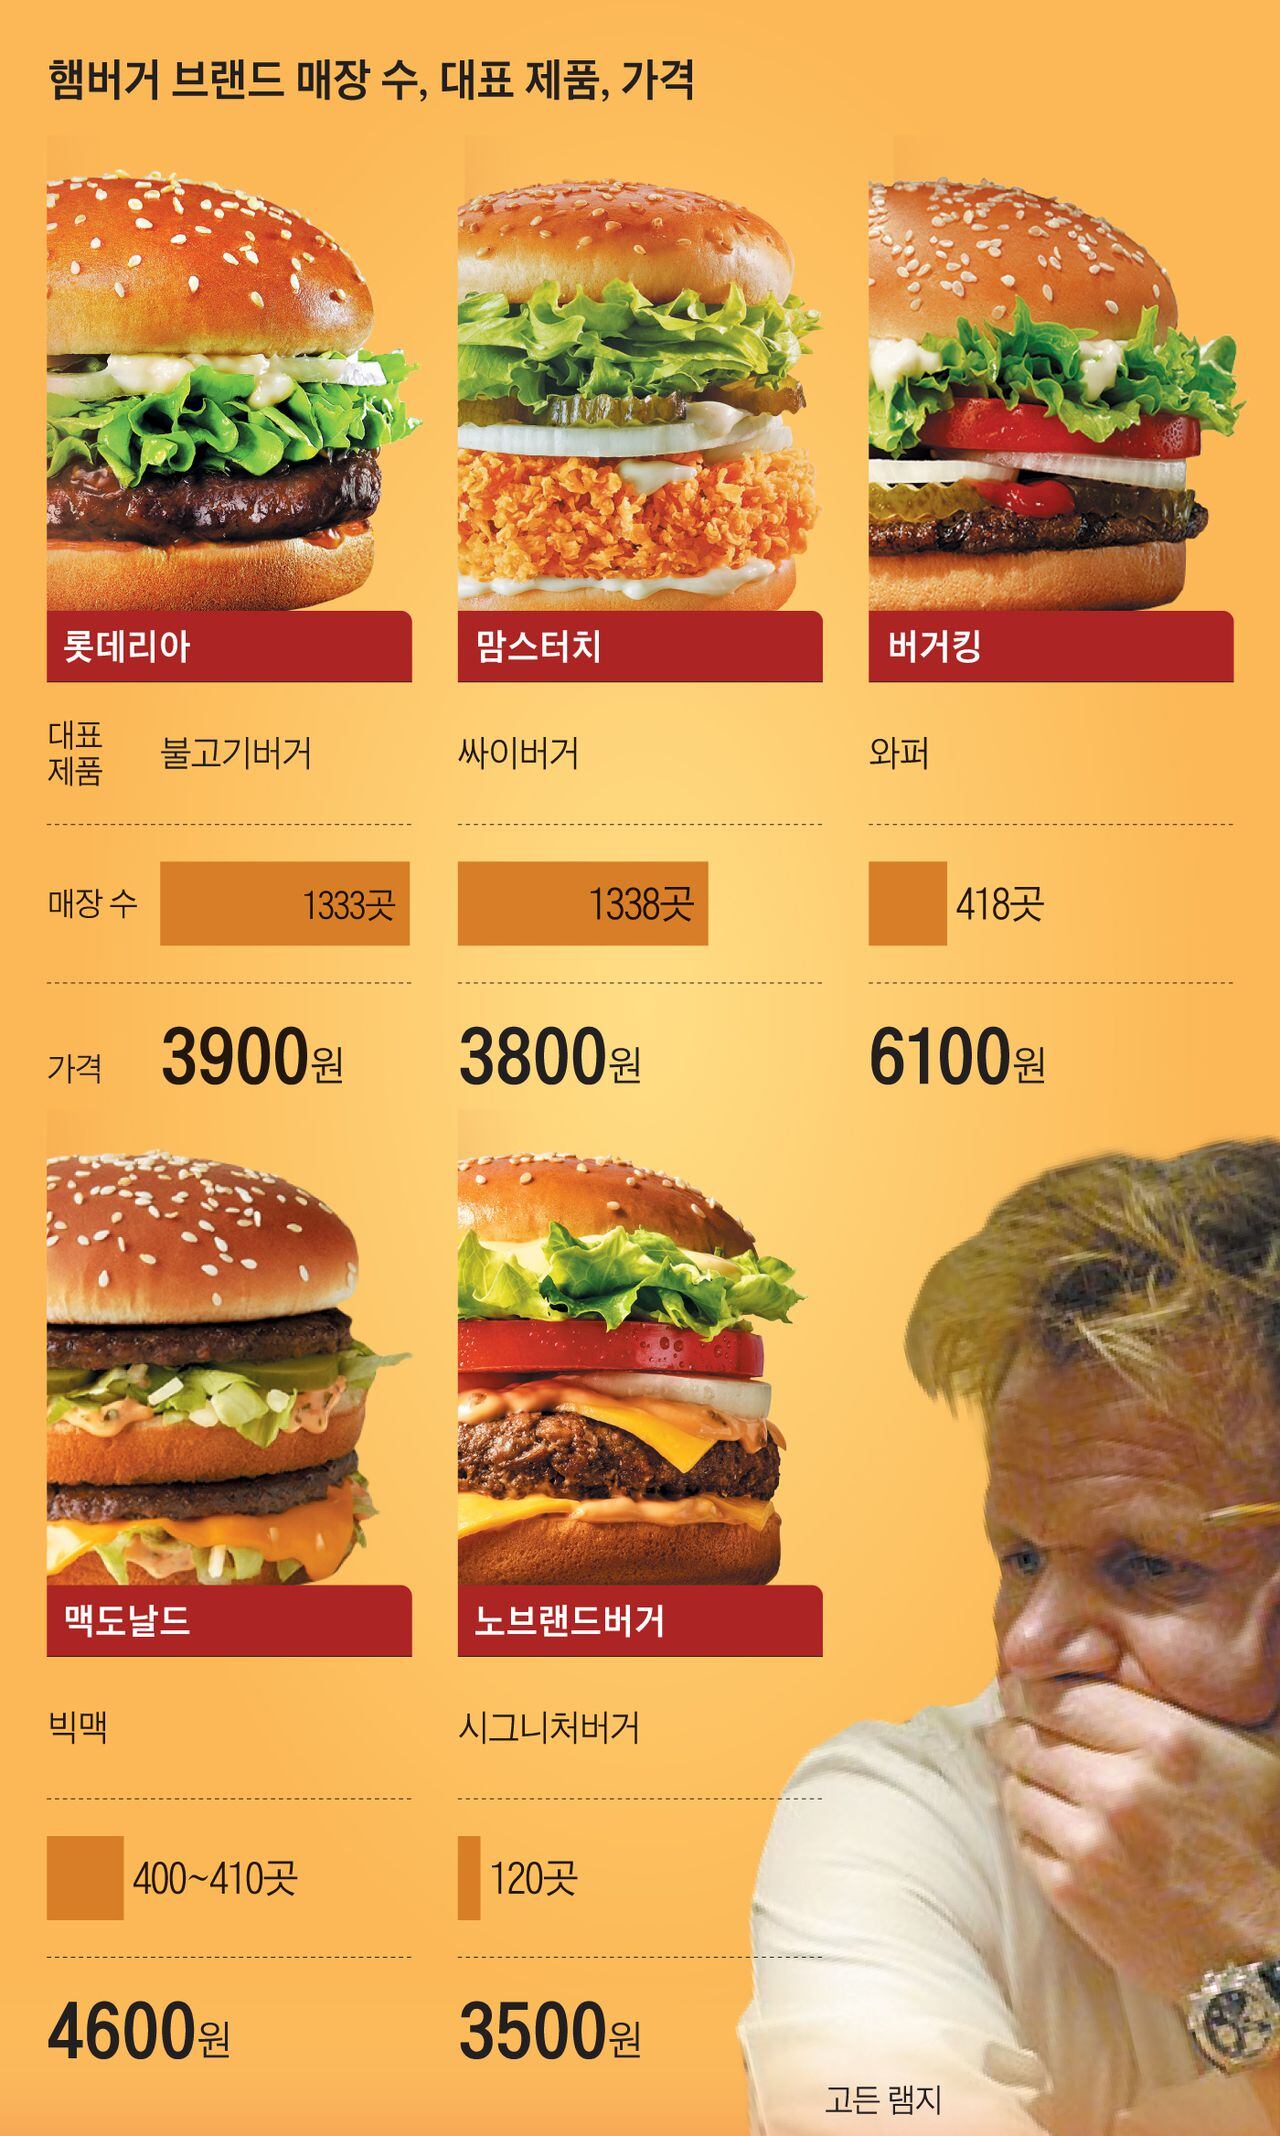 英 고든 램지까지 온다, 한국 햄버거 시장 이토록 뜨거워진 이유